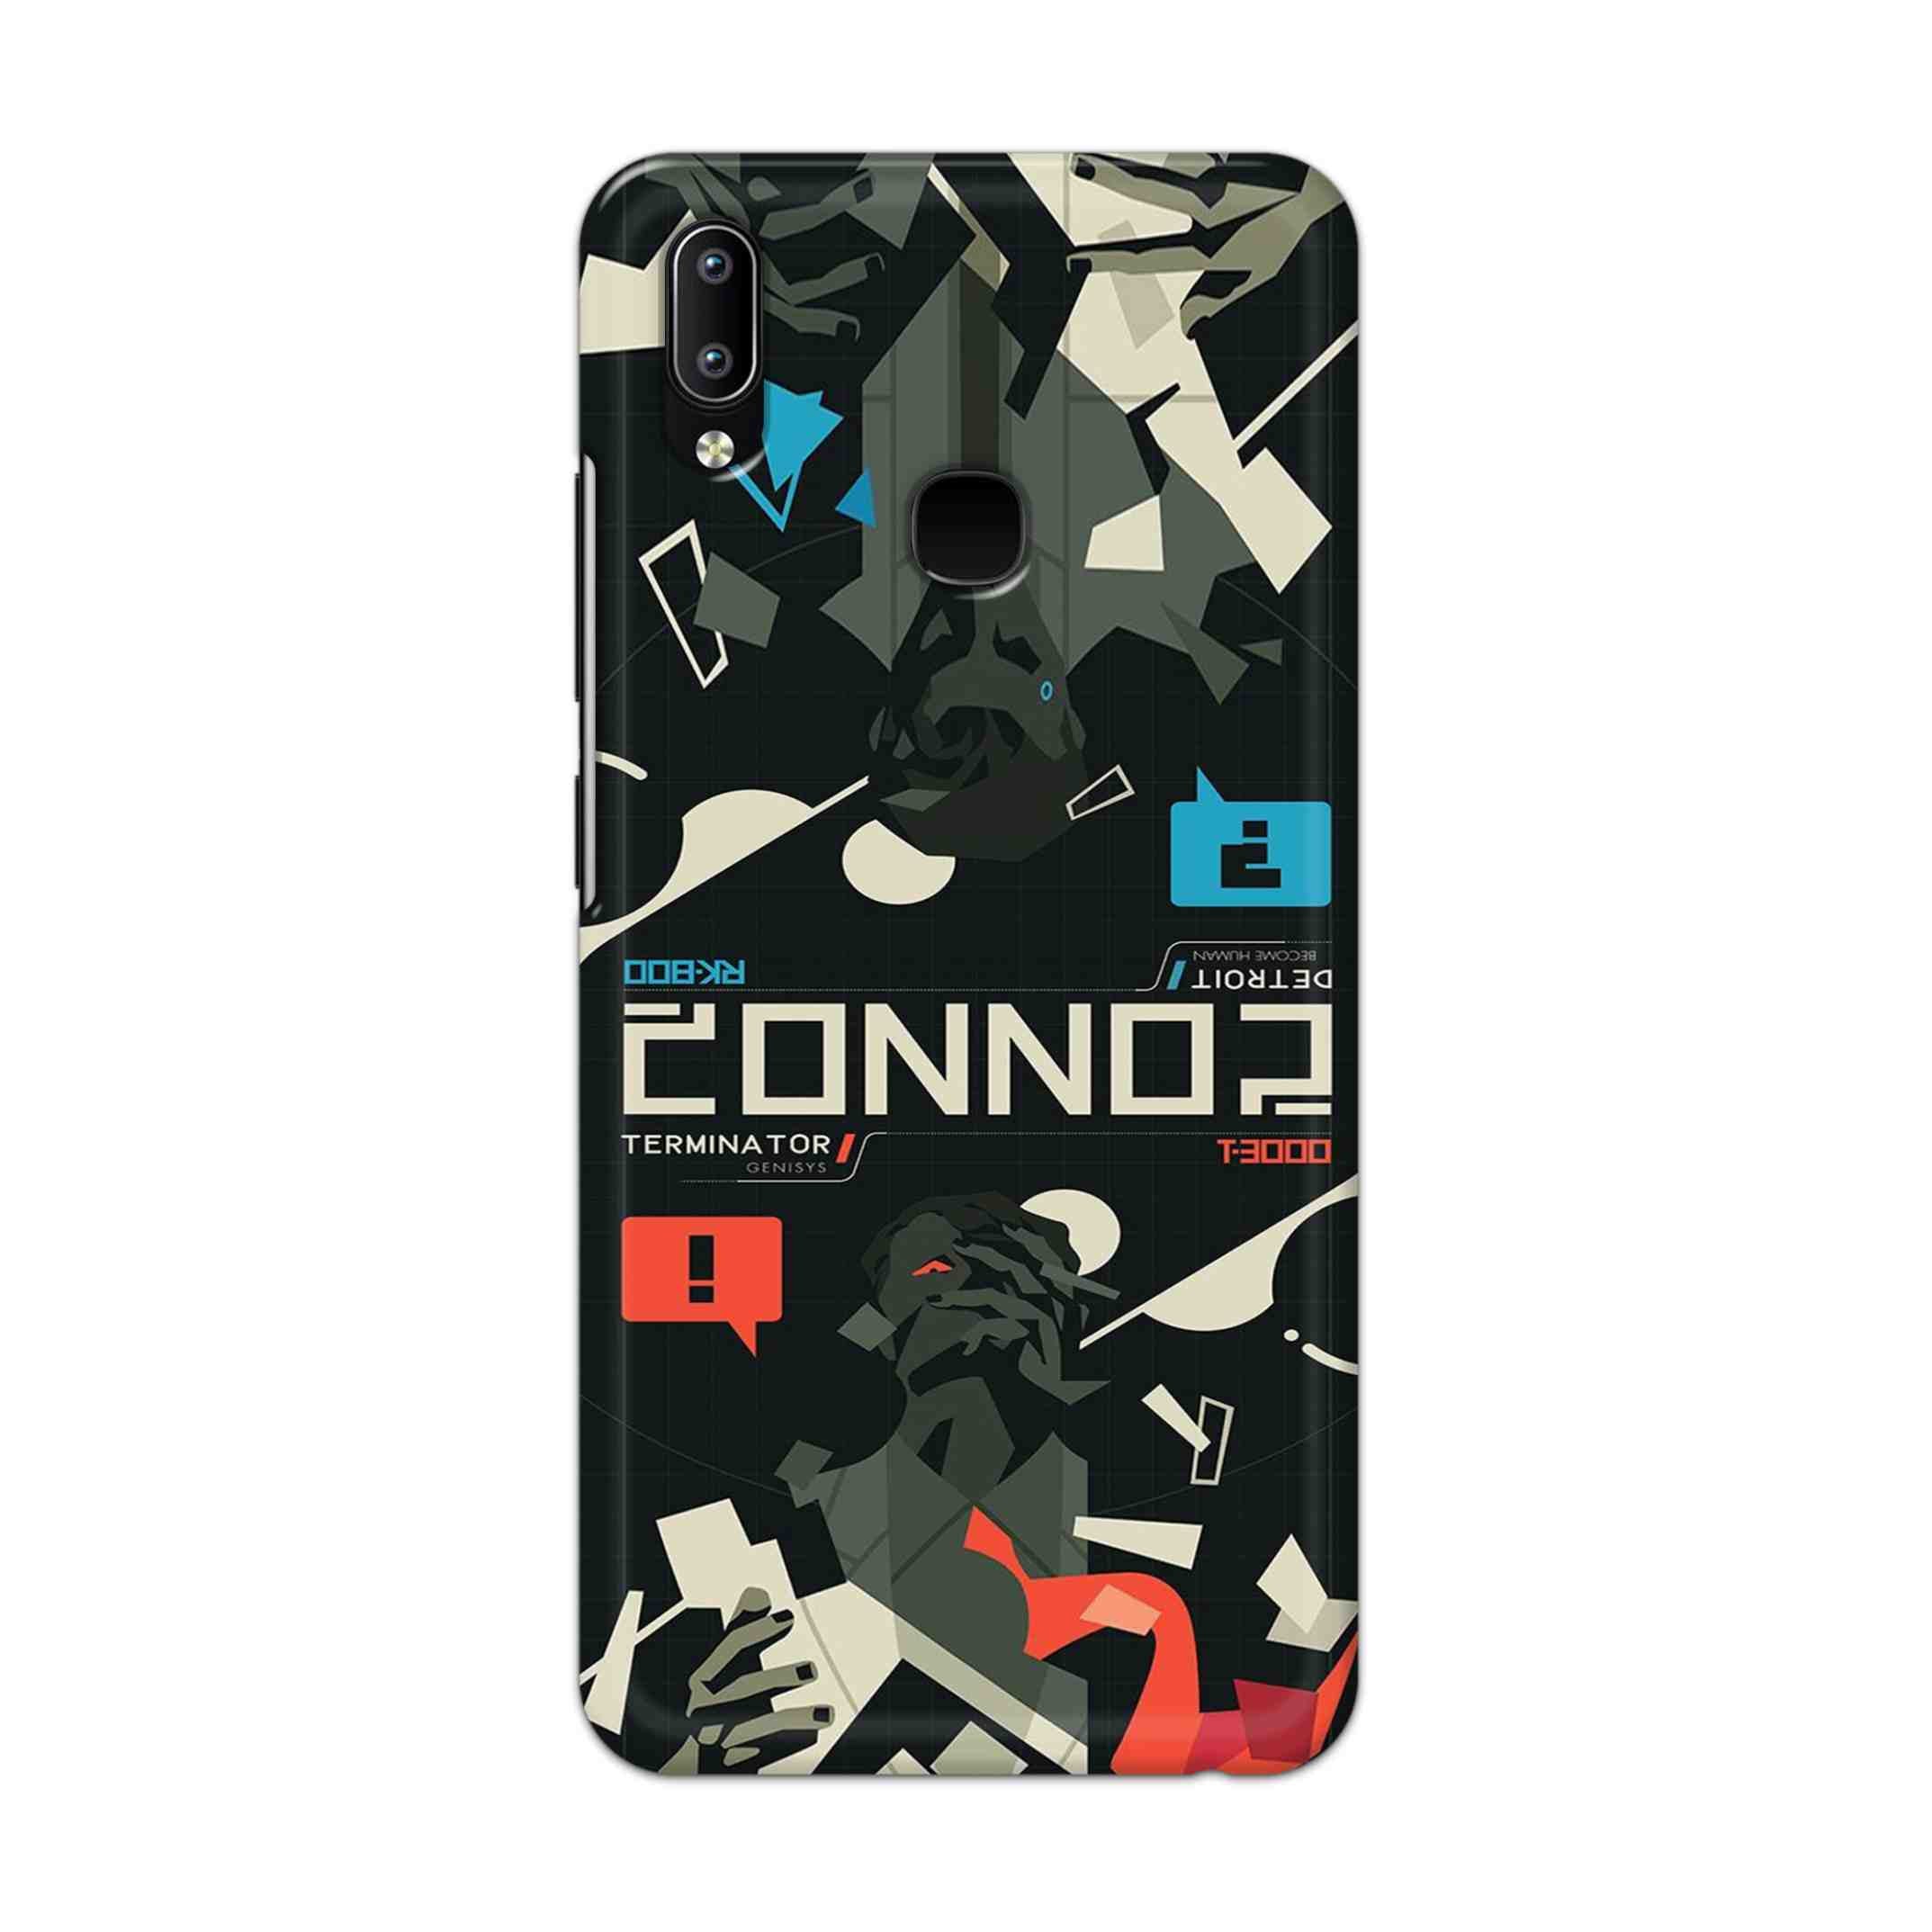 Buy Terminator Hard Back Mobile Phone Case Cover For Vivo Y95 / Y93 / Y91 Online